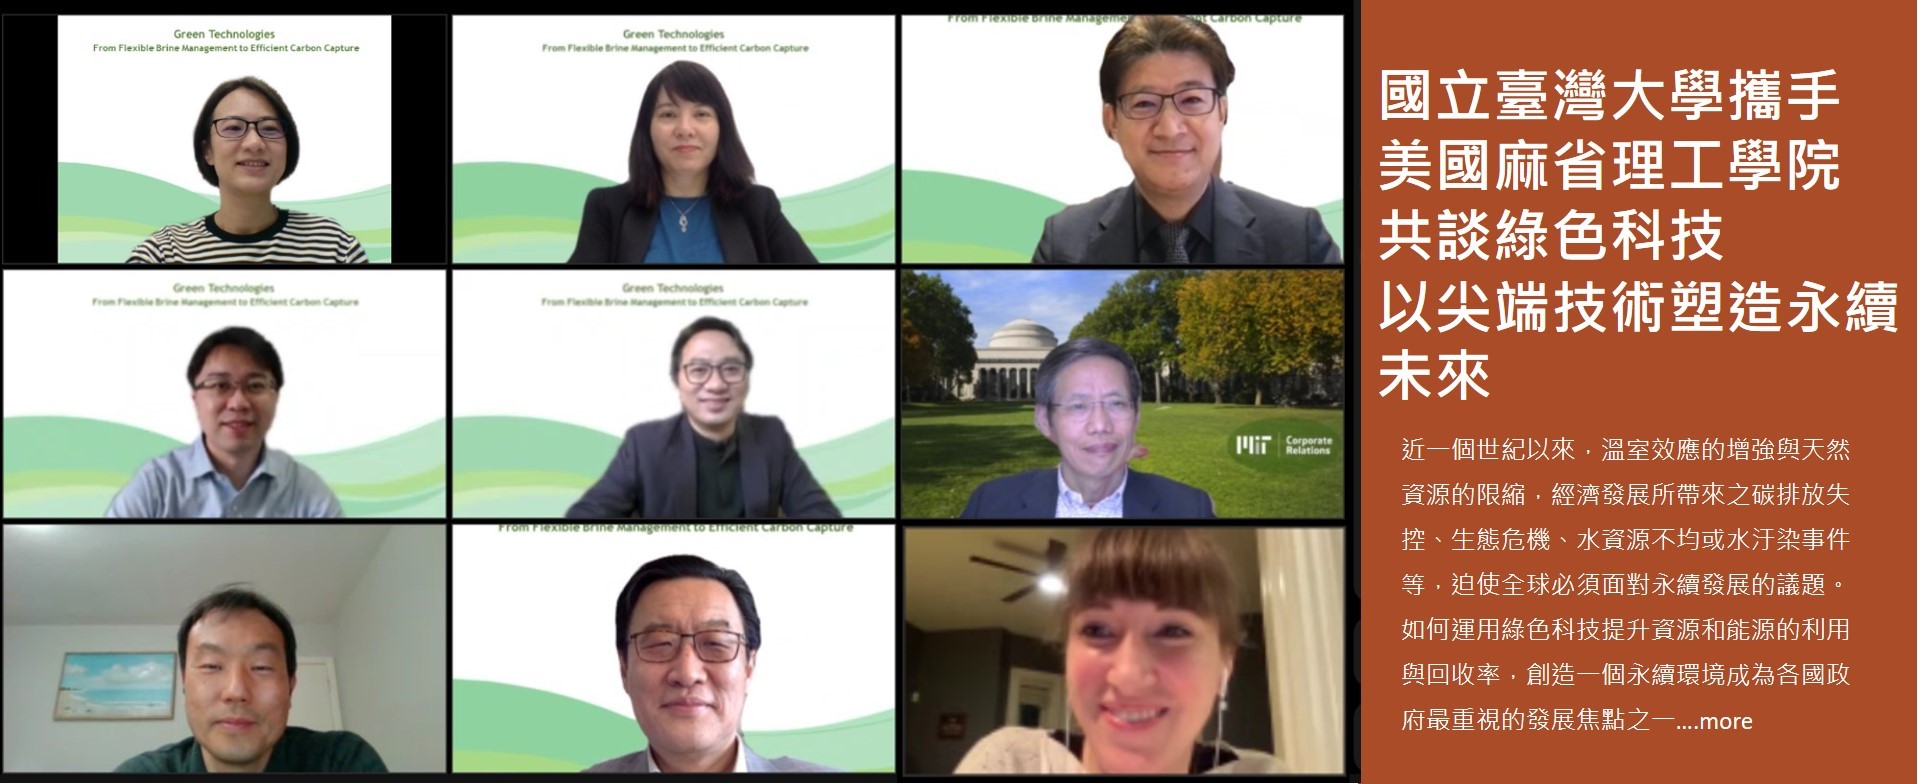 國立臺灣大學攜手美國麻省理工學院共談綠色科技  以尖端技術塑造永續未來